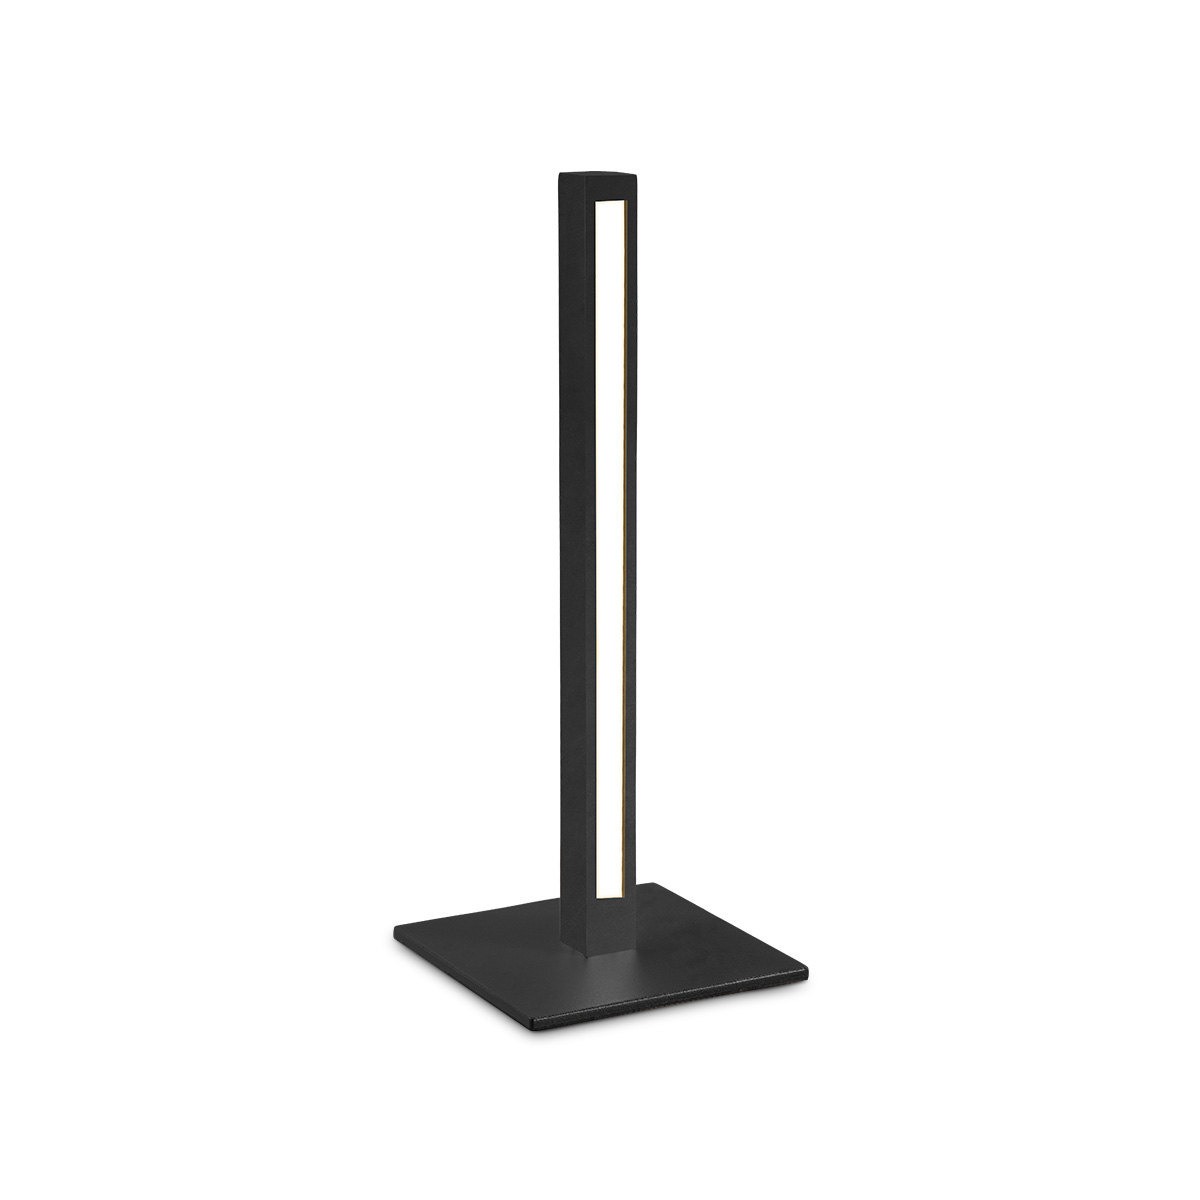 Tangla lighting - TLT7607-01SB - LED Table lamp - metal - black block - black